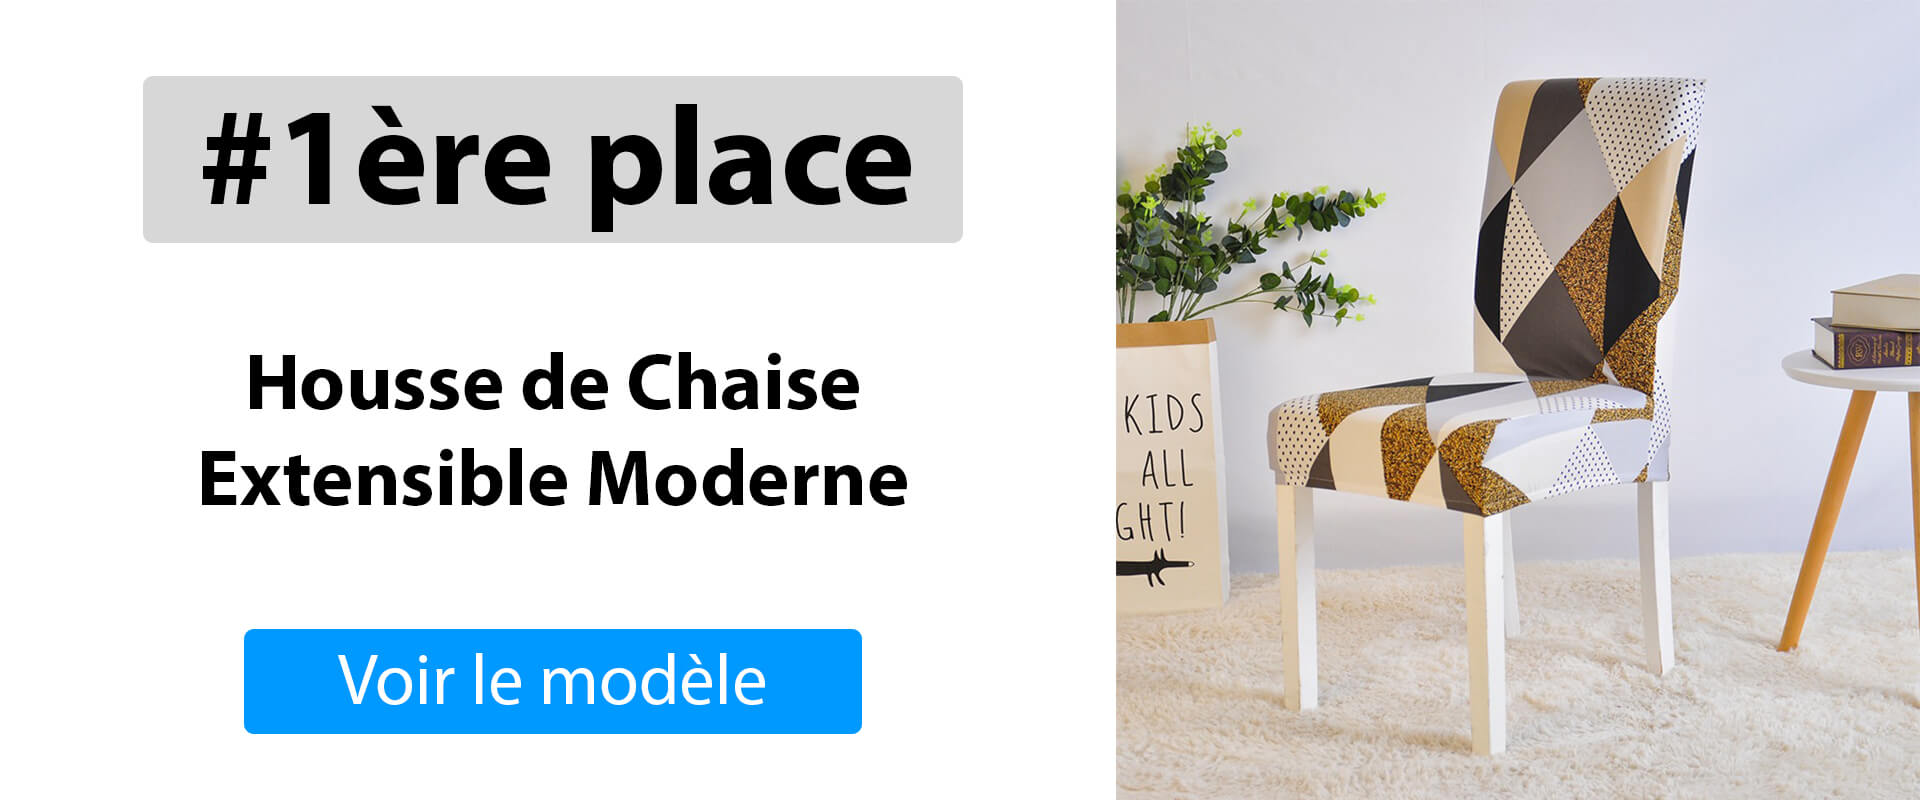 Première position : Housse de Chaise Extensible Moderne